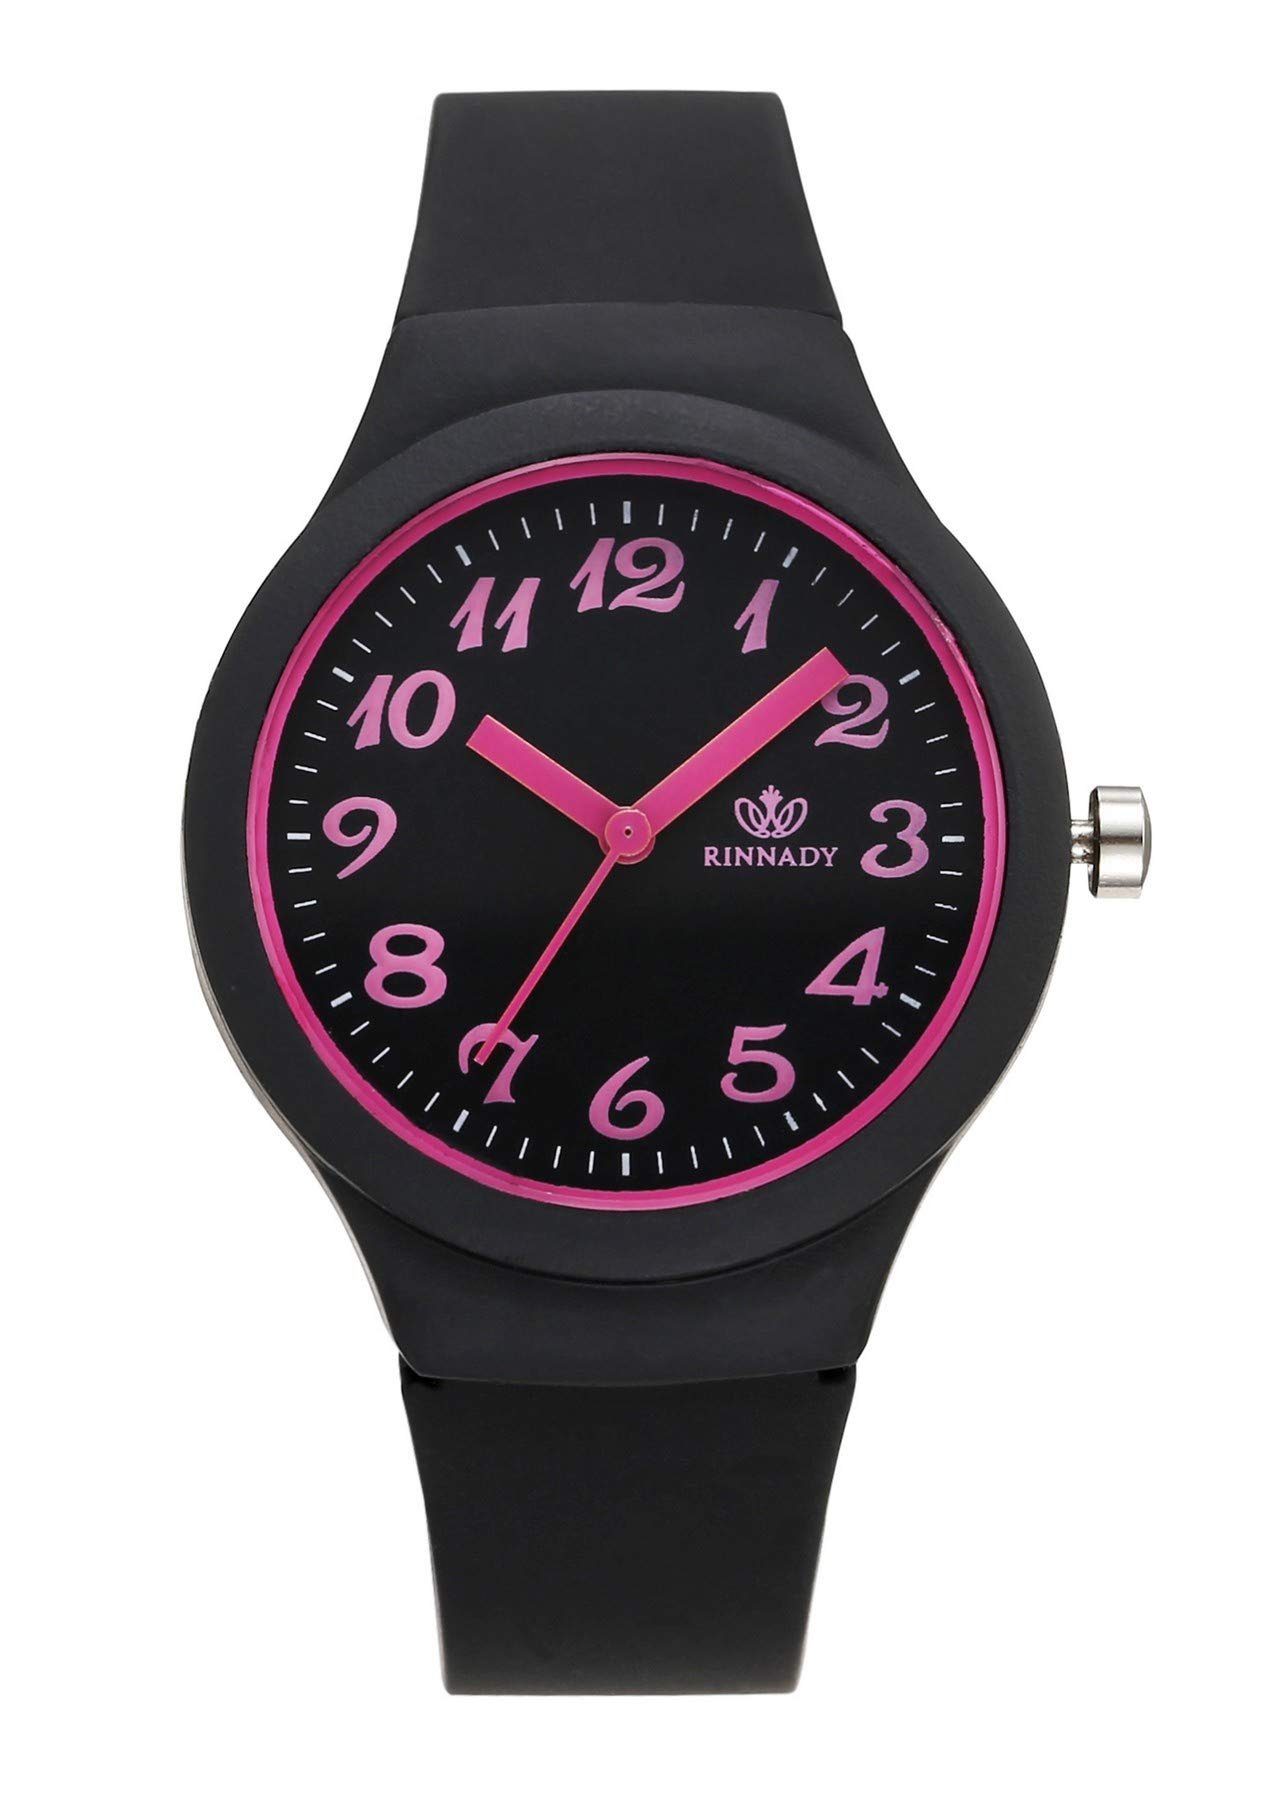 Housruse Quarzuhr Armbanduhr Candy Farbe Silikonband Sportuhr arabische  Ziffern